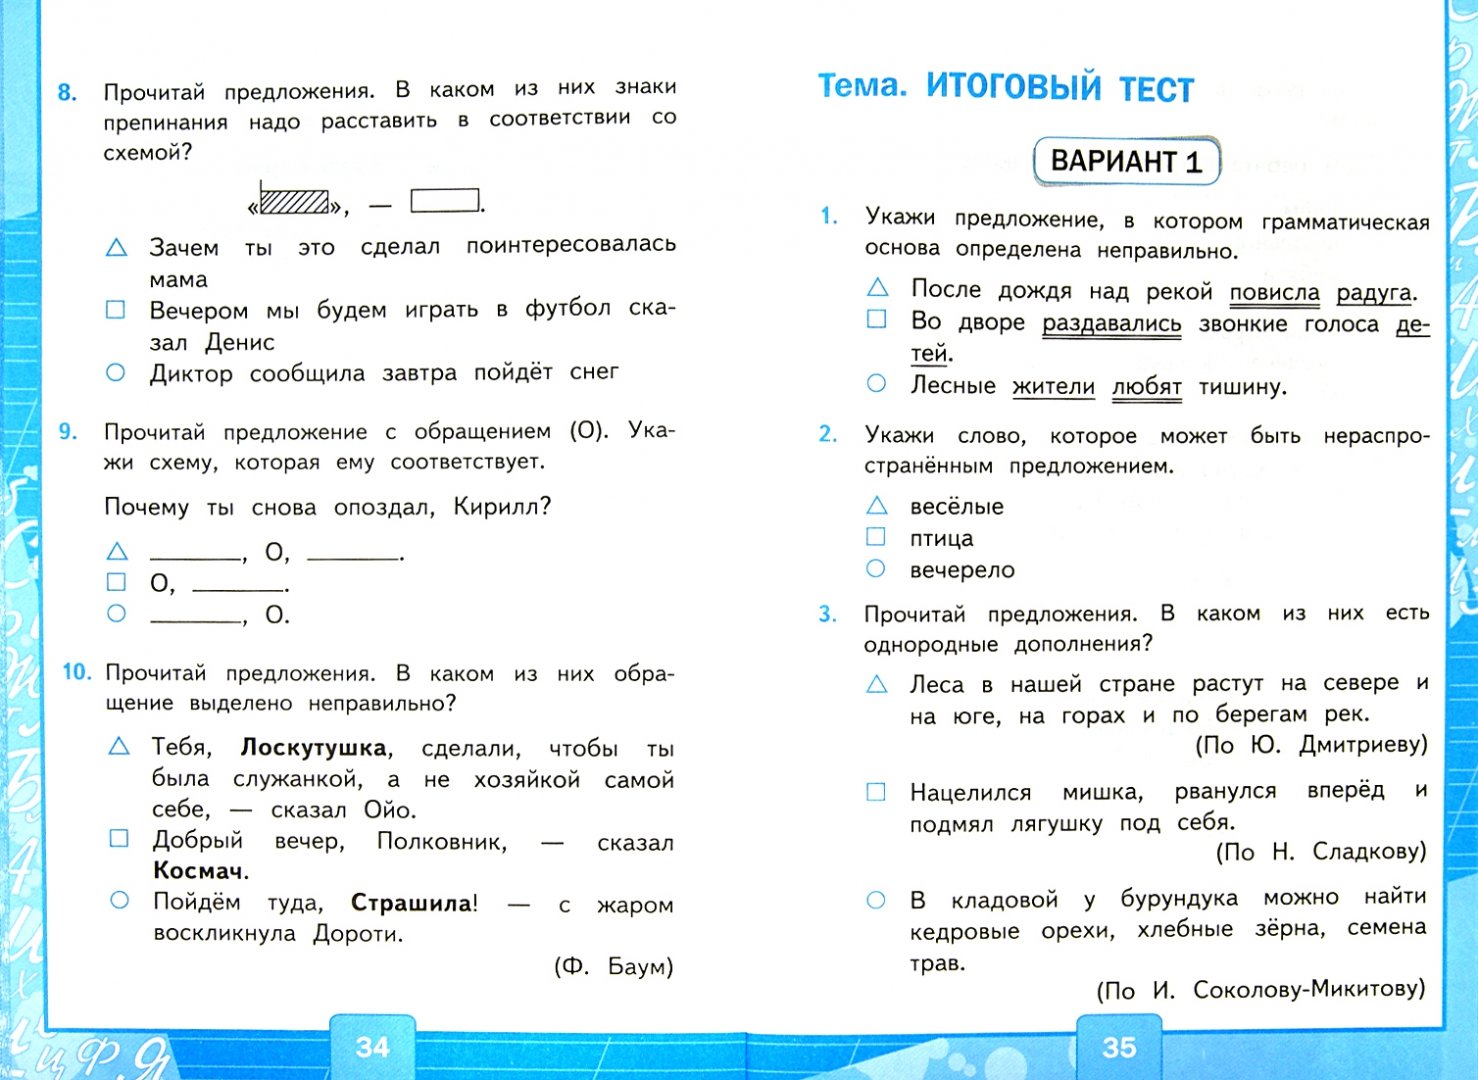 Тесты по русскому 2 класс 4 четверть